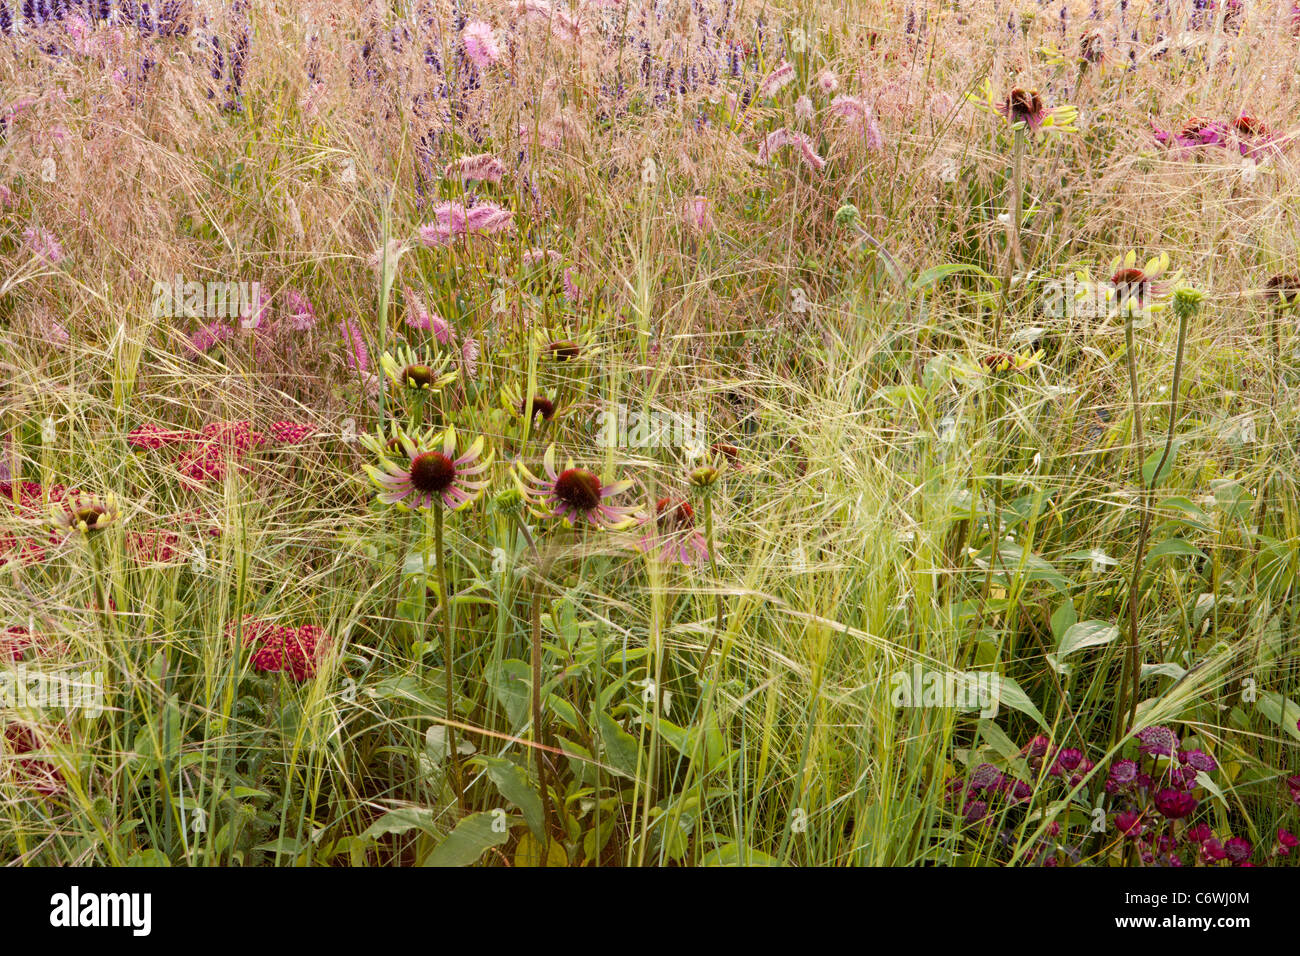 Un jardin sauvage de prairie avec herbes ornementales deschampasia stipa et Echinacea achillea sanguisorba fleurs frontière été Royaume-Uni Banque D'Images